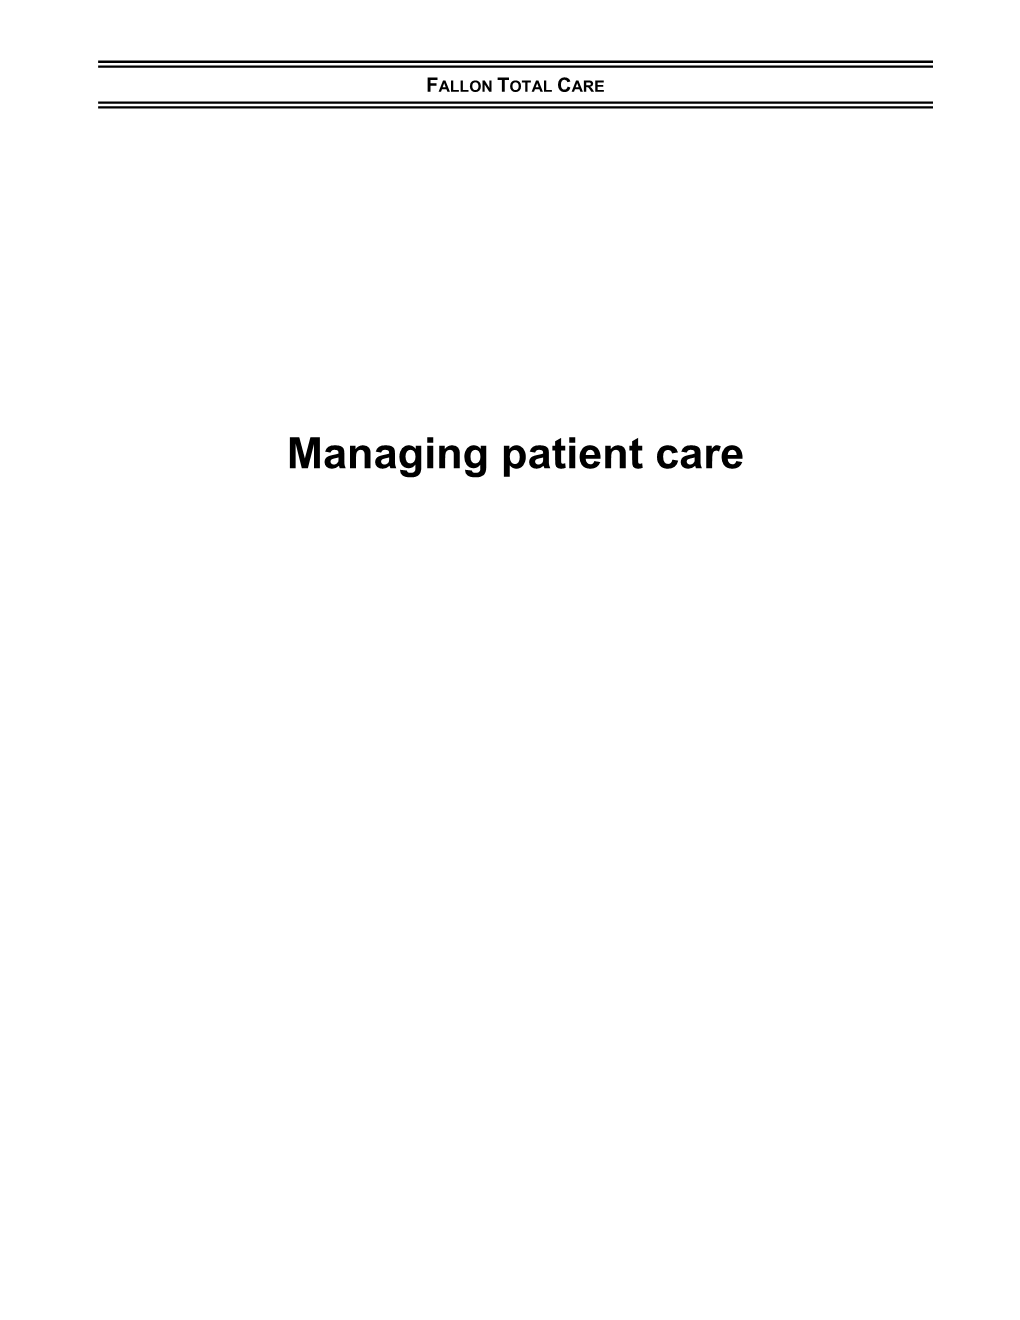 Managing Patient Care